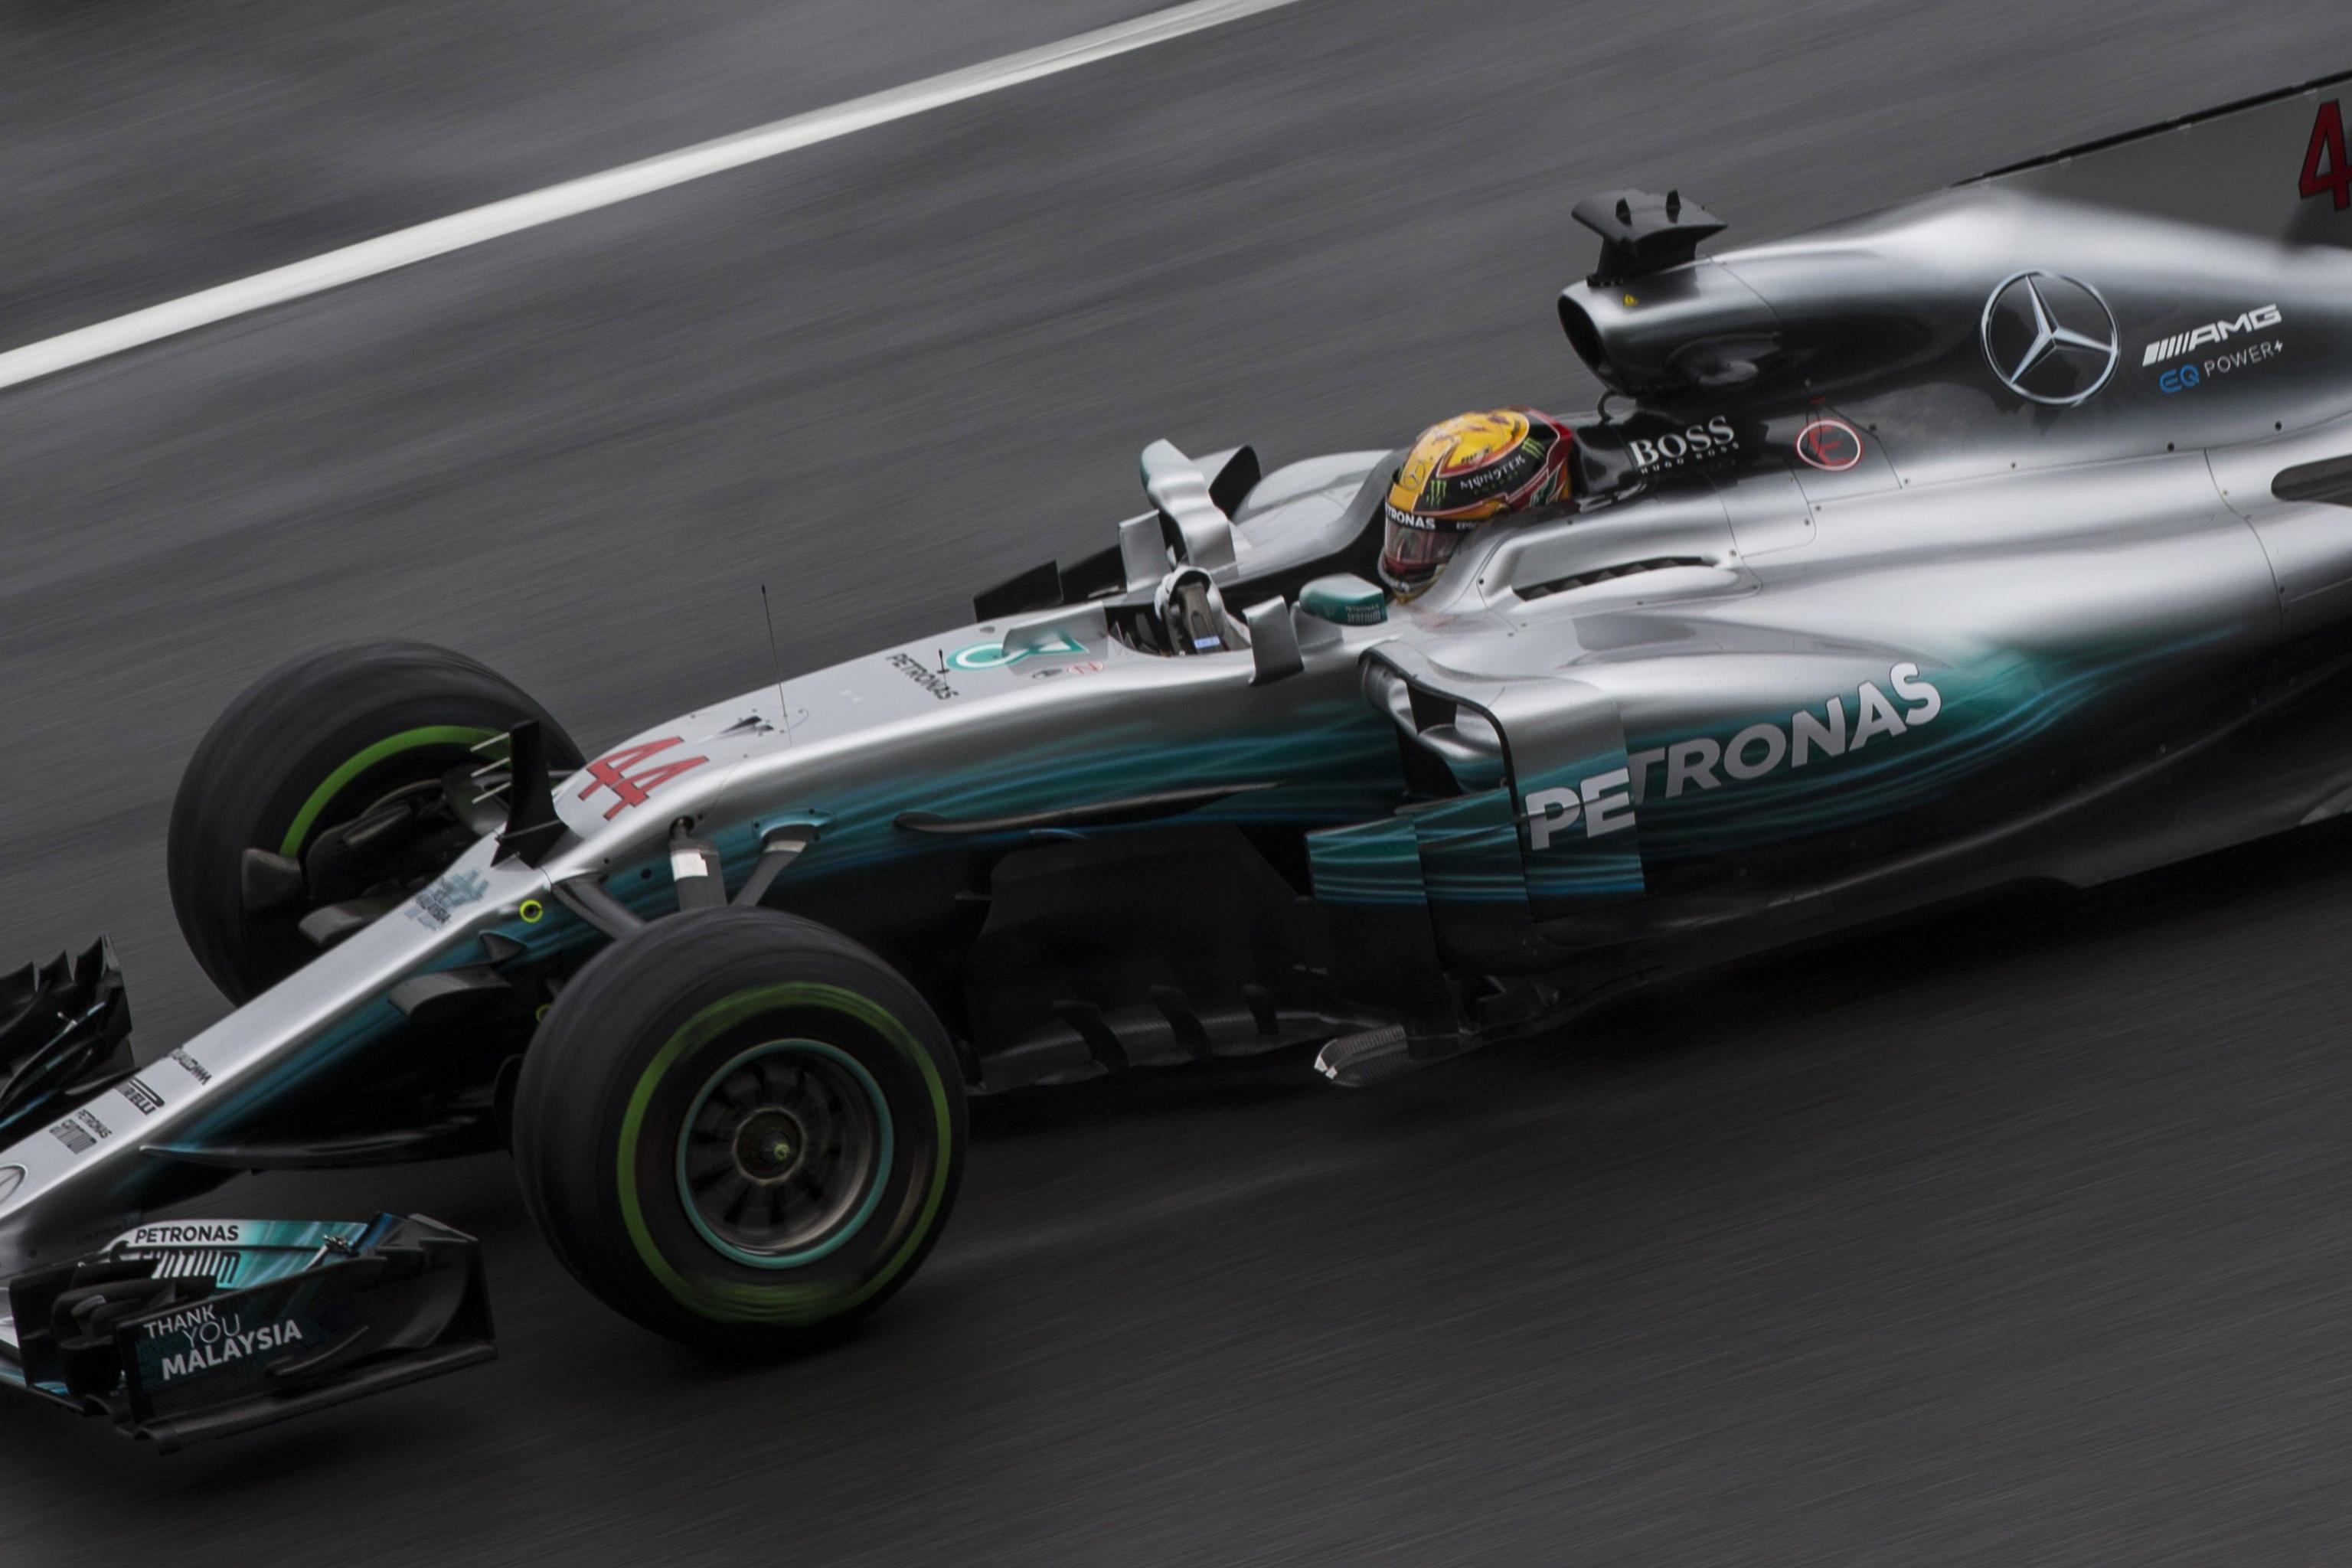 Tradizionale venerdì in sordina per Lewis Hamilton. L’inglese della Mercedes, leader del mondiale, ha chiuso la sessione di prove in sesta posizione